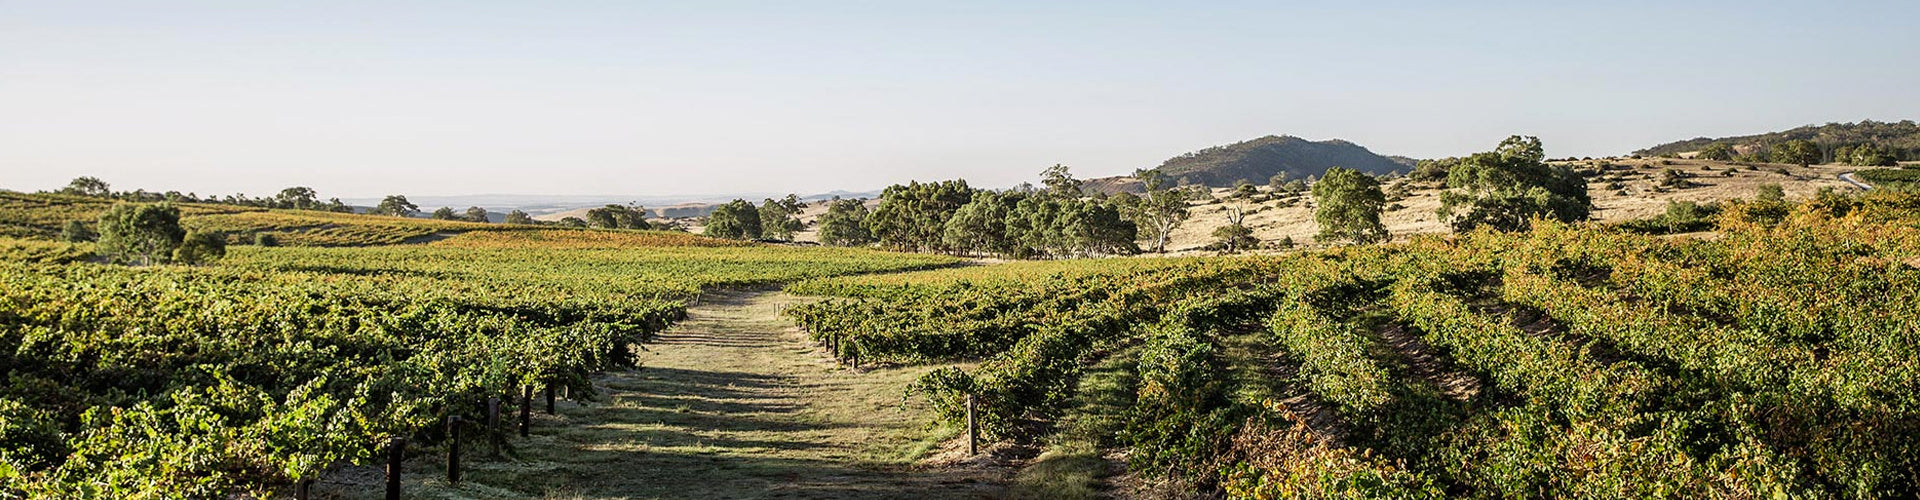 Eden Valley Vineyards in South Australia